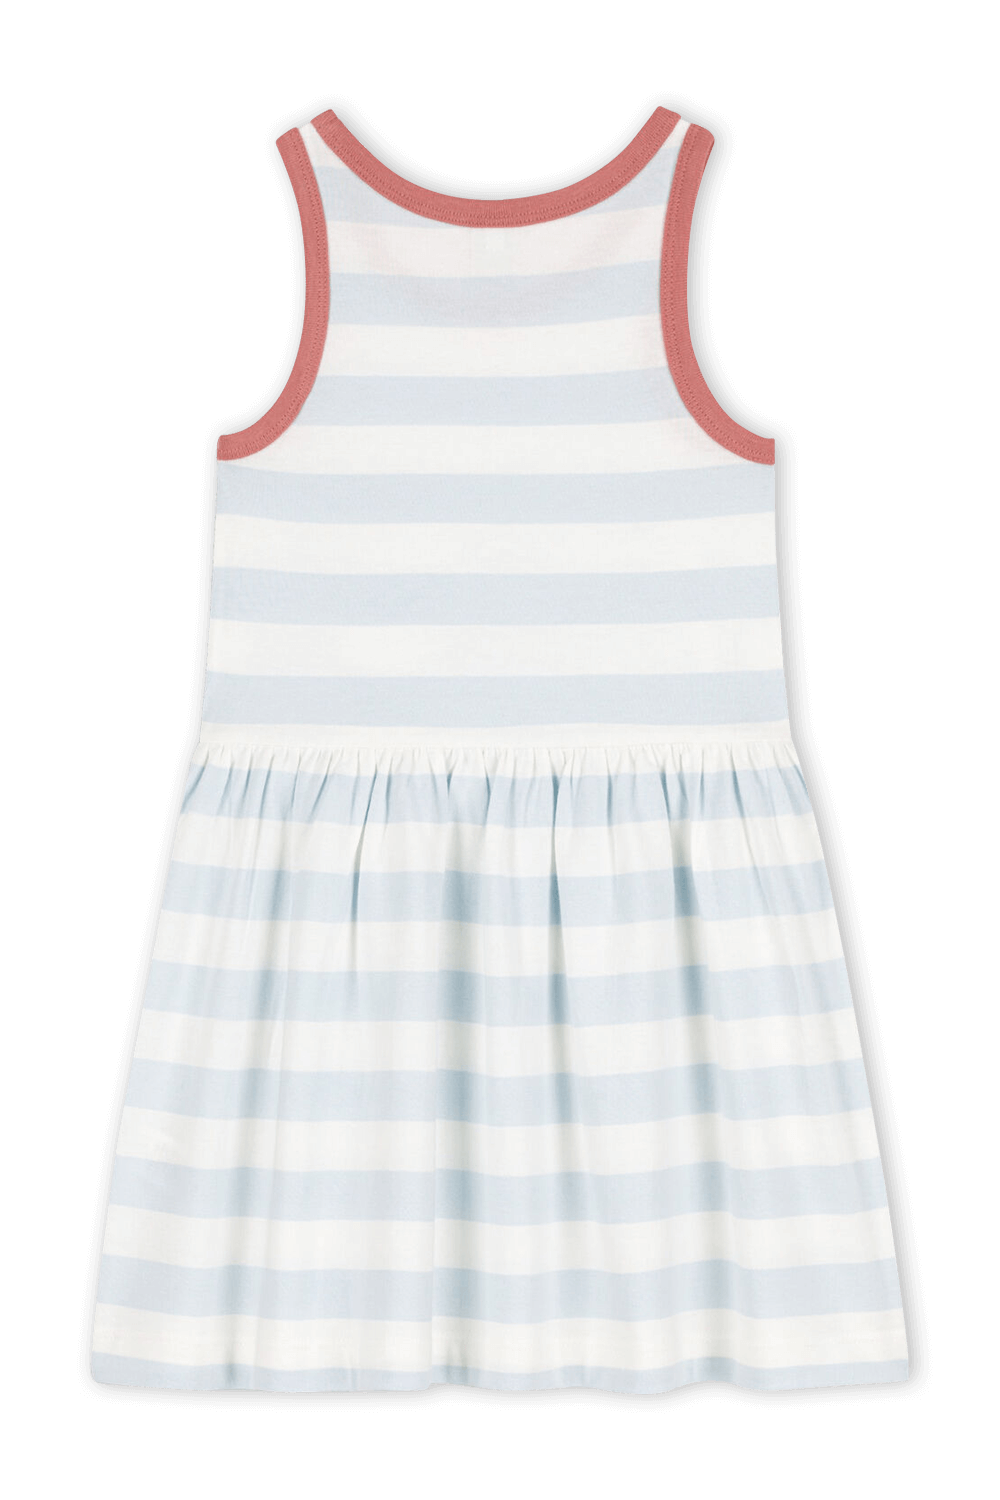 גילאי 2-5 שמלת מיני עם פסים בגווני תכלת ולבן PETIT BATEAU